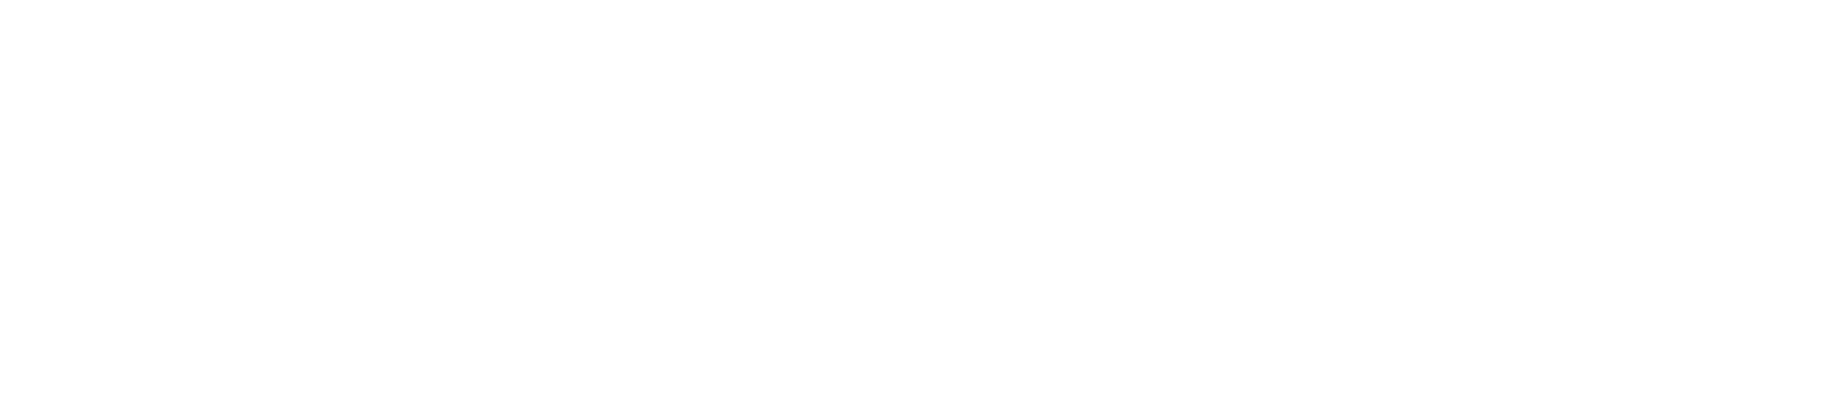 Ampio - Tech Forum